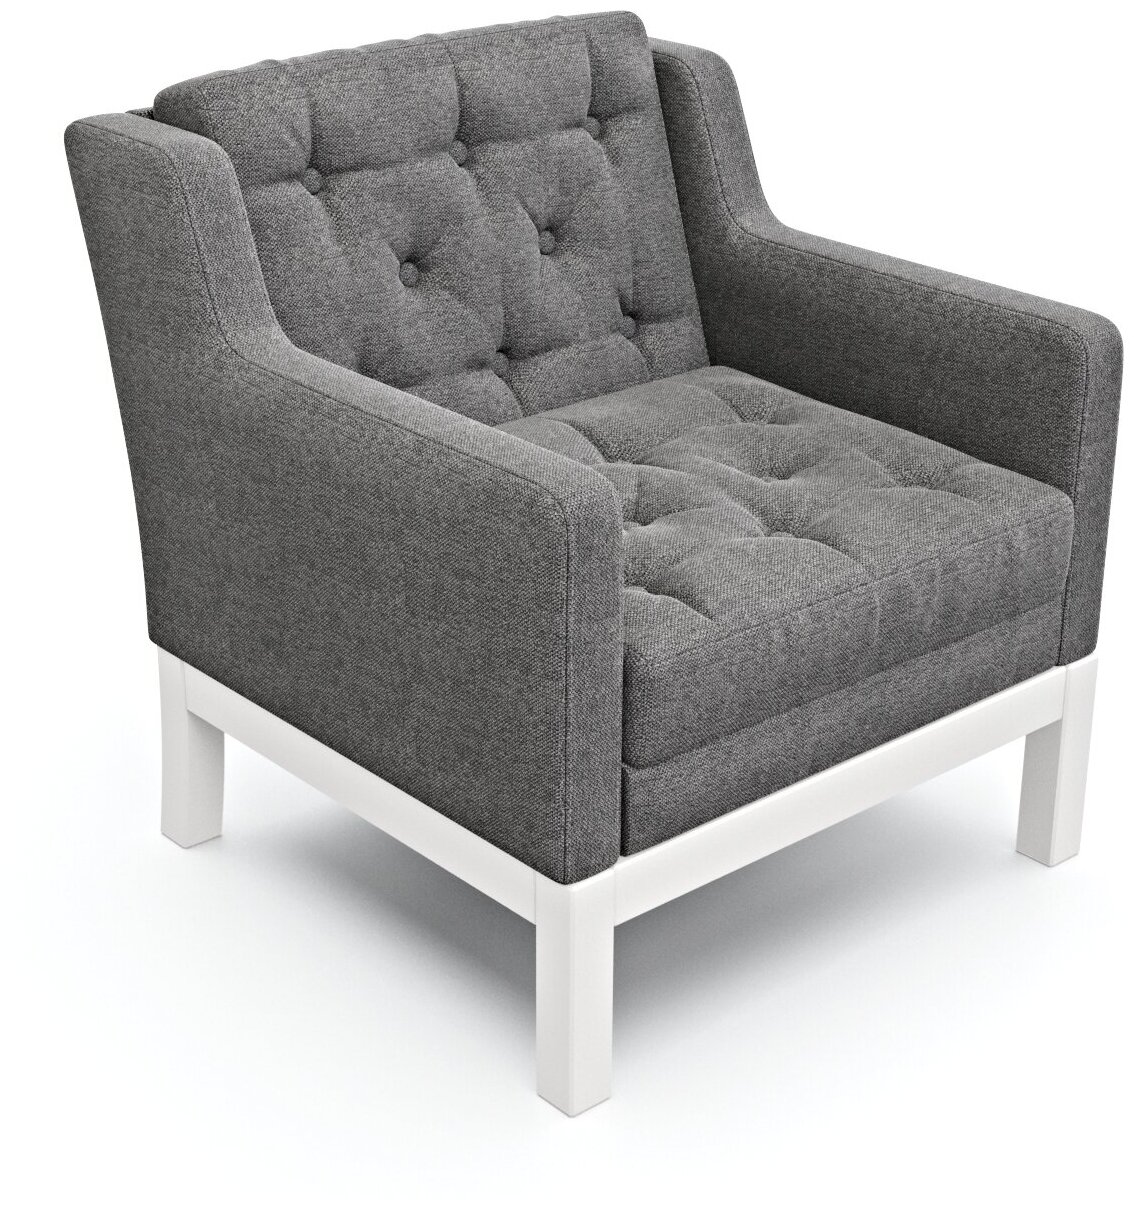 Дизайнерское мягкое кресло Soft Element Нептун, на деревянных ножках, рогожка, серый-белый, современный стиль скандинавский лофт, в гостиную, офис